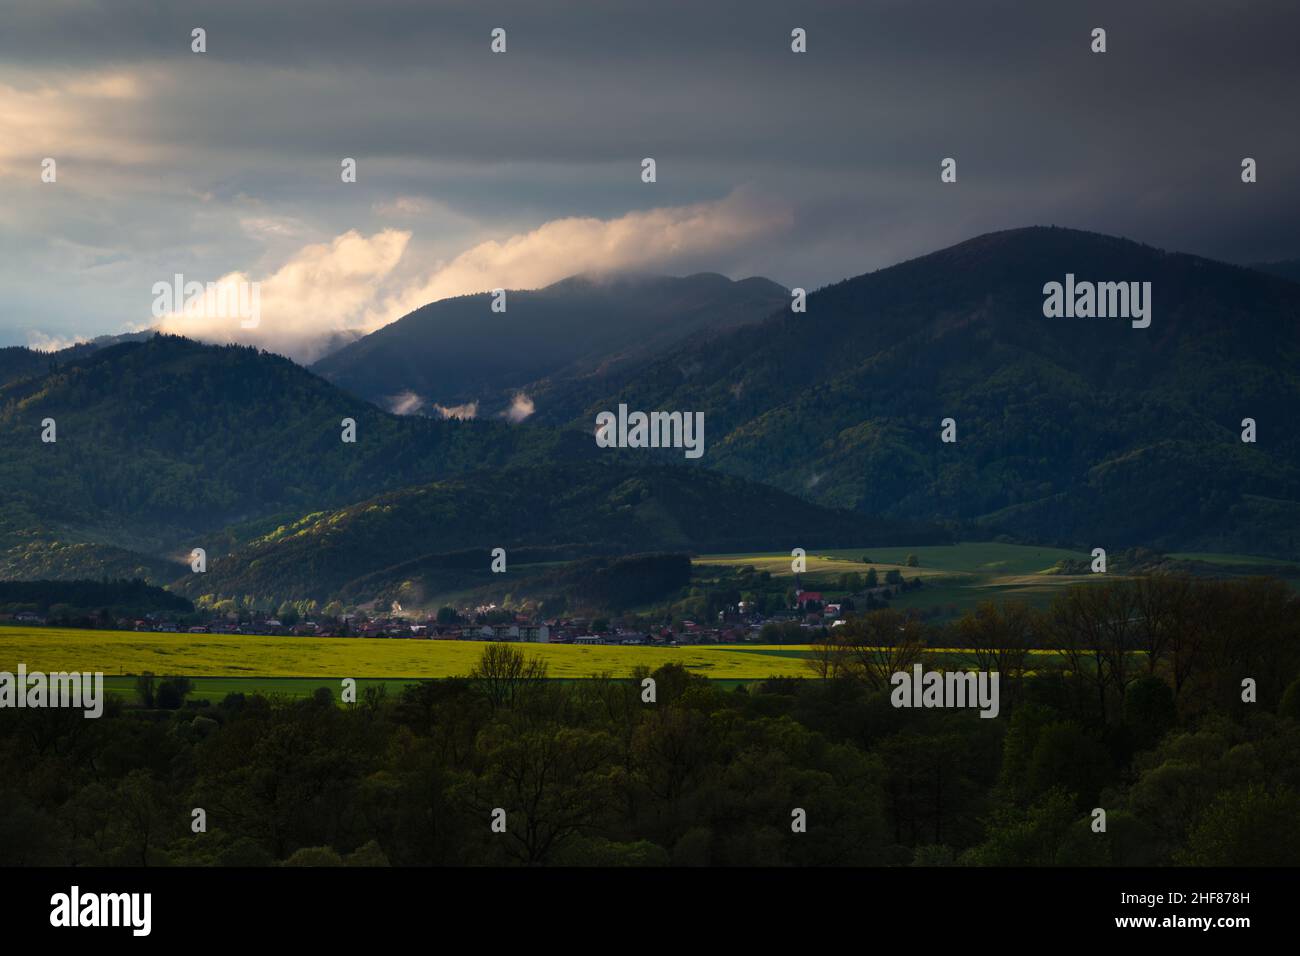 Dramatisches Licht über den Bergen bei Valca Village, Slowakei. Stockfoto